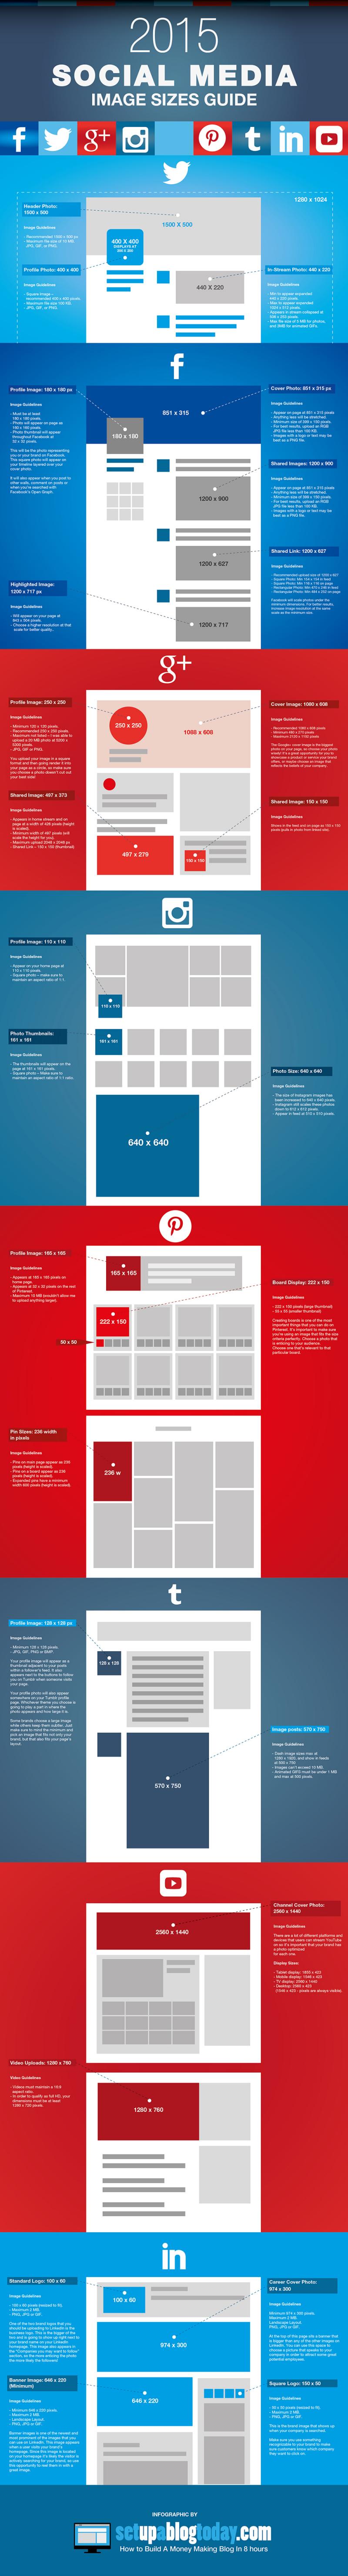 Medidas imagenes Redes Sociales 2015 2 Guía 2015 de tamaños de imágenes para Redes Sociales (infografía)